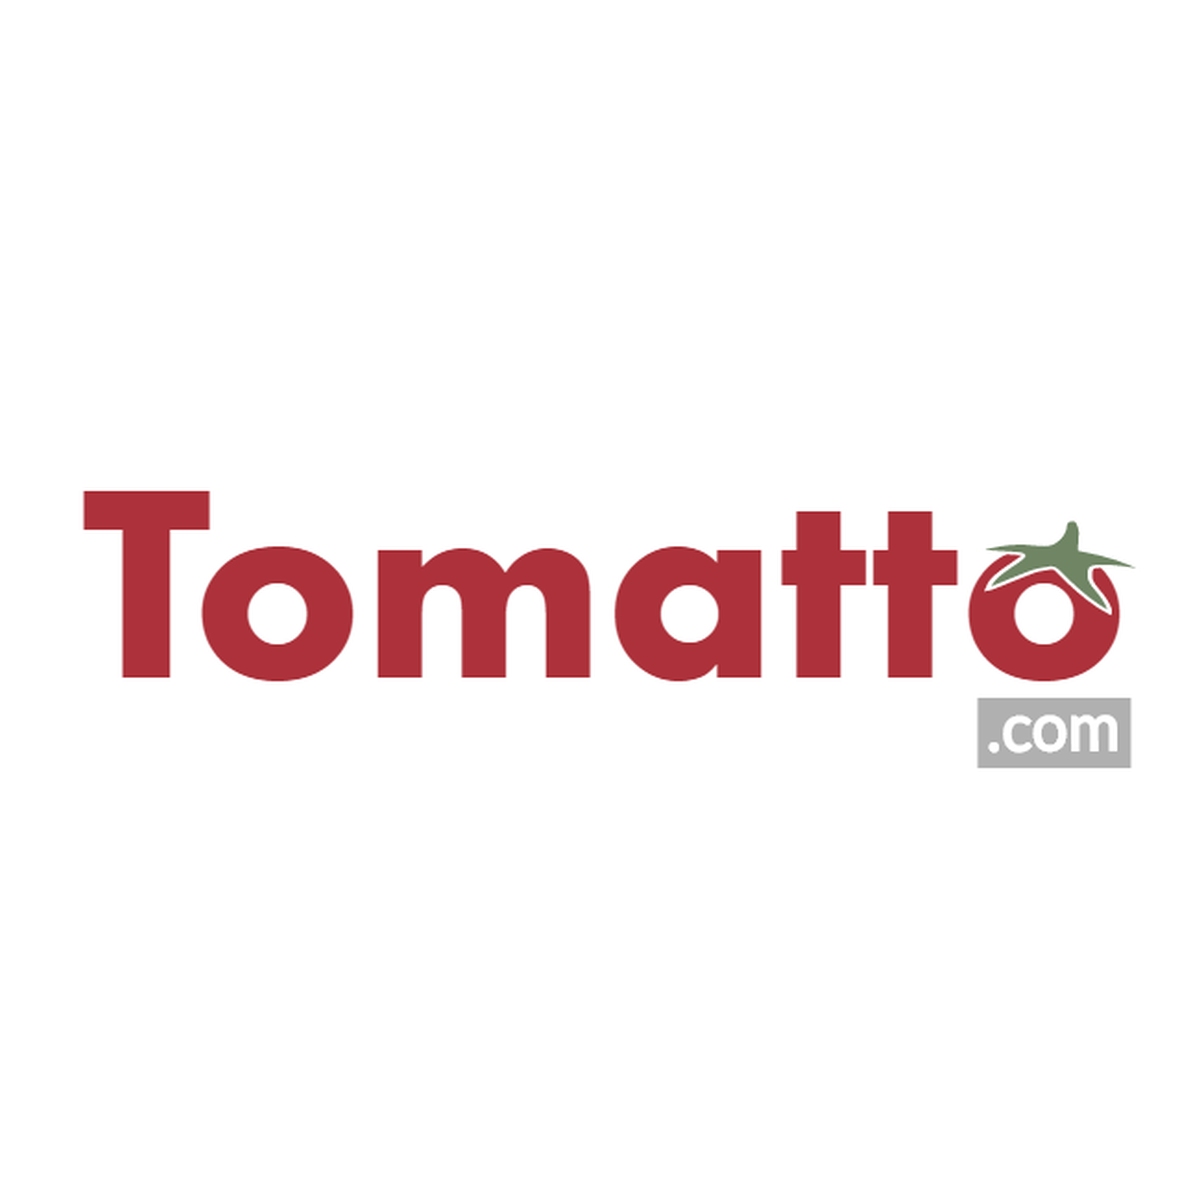 Tomatto